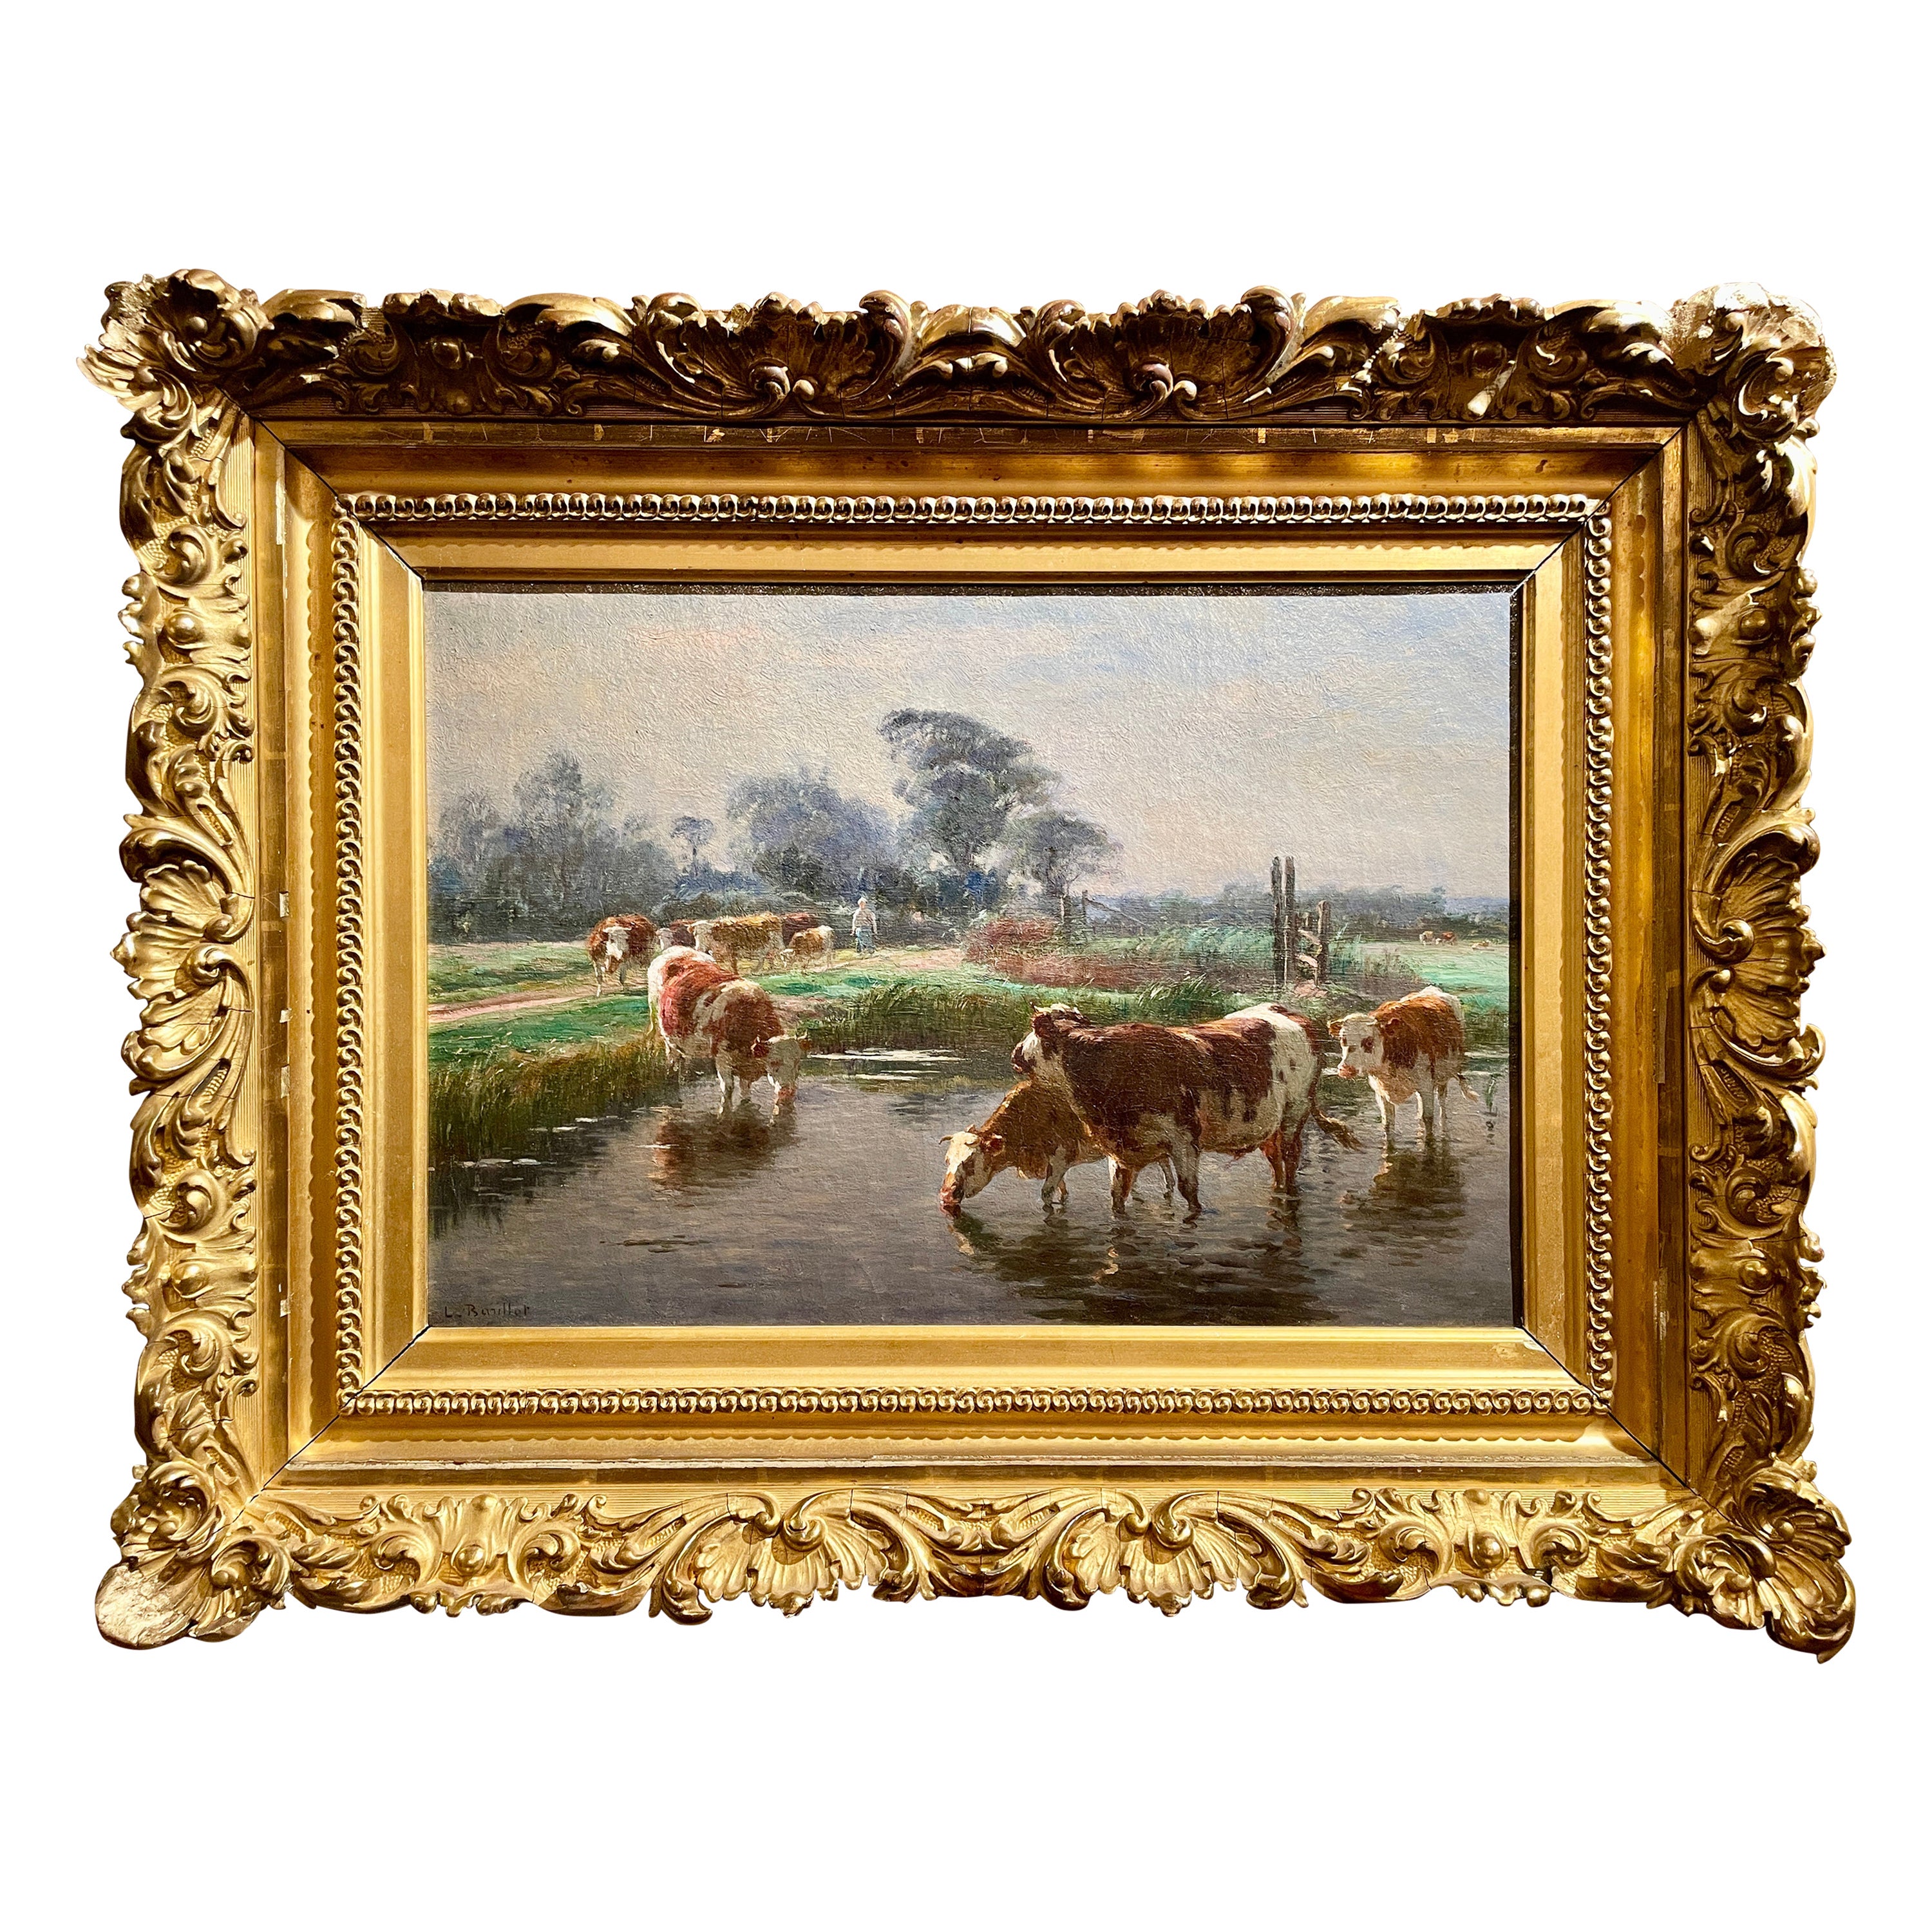 Ancienne peinture française de paysage à l'huile sur toile signée Léon Barillot, circa 1890